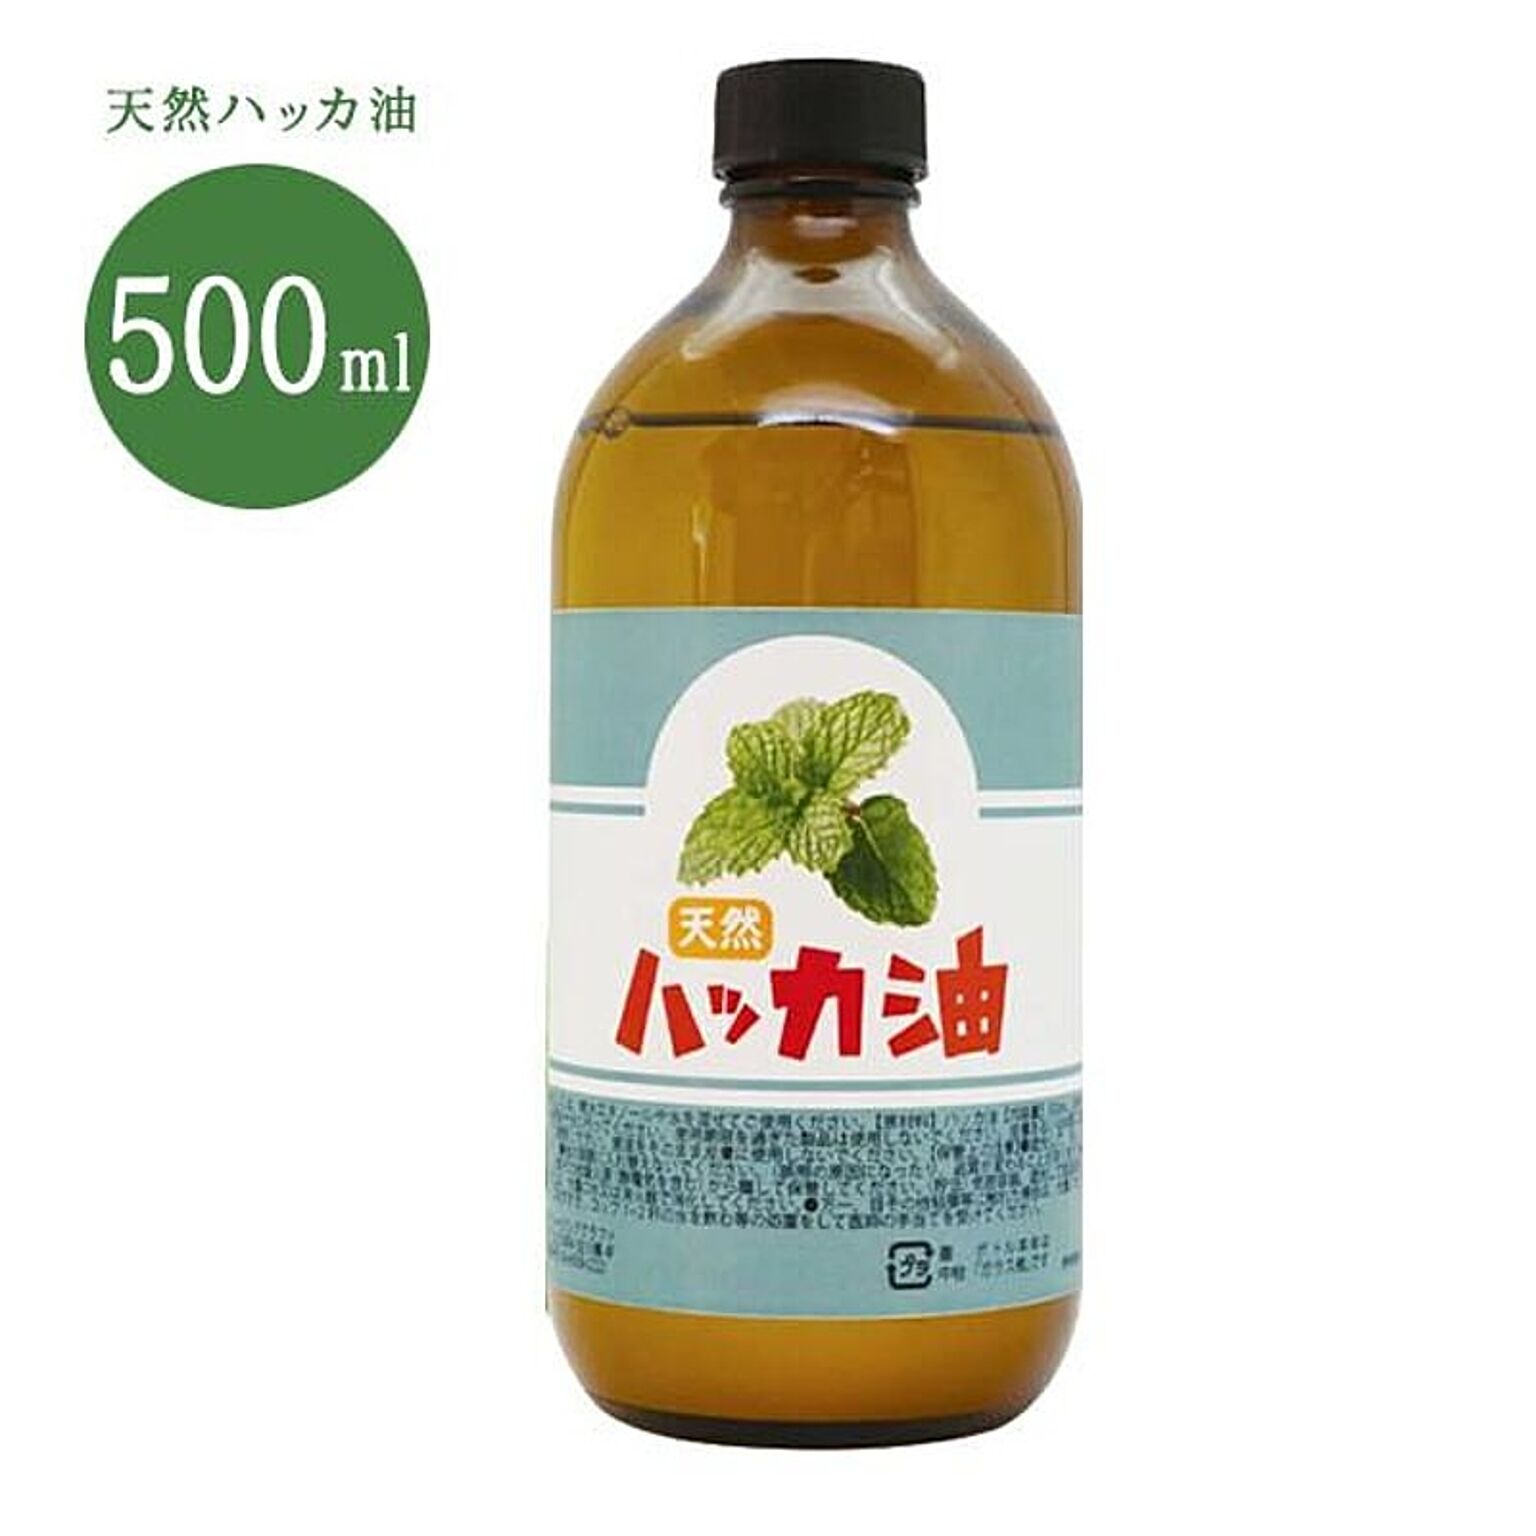 【☆60】/天然ハッカ油500ml